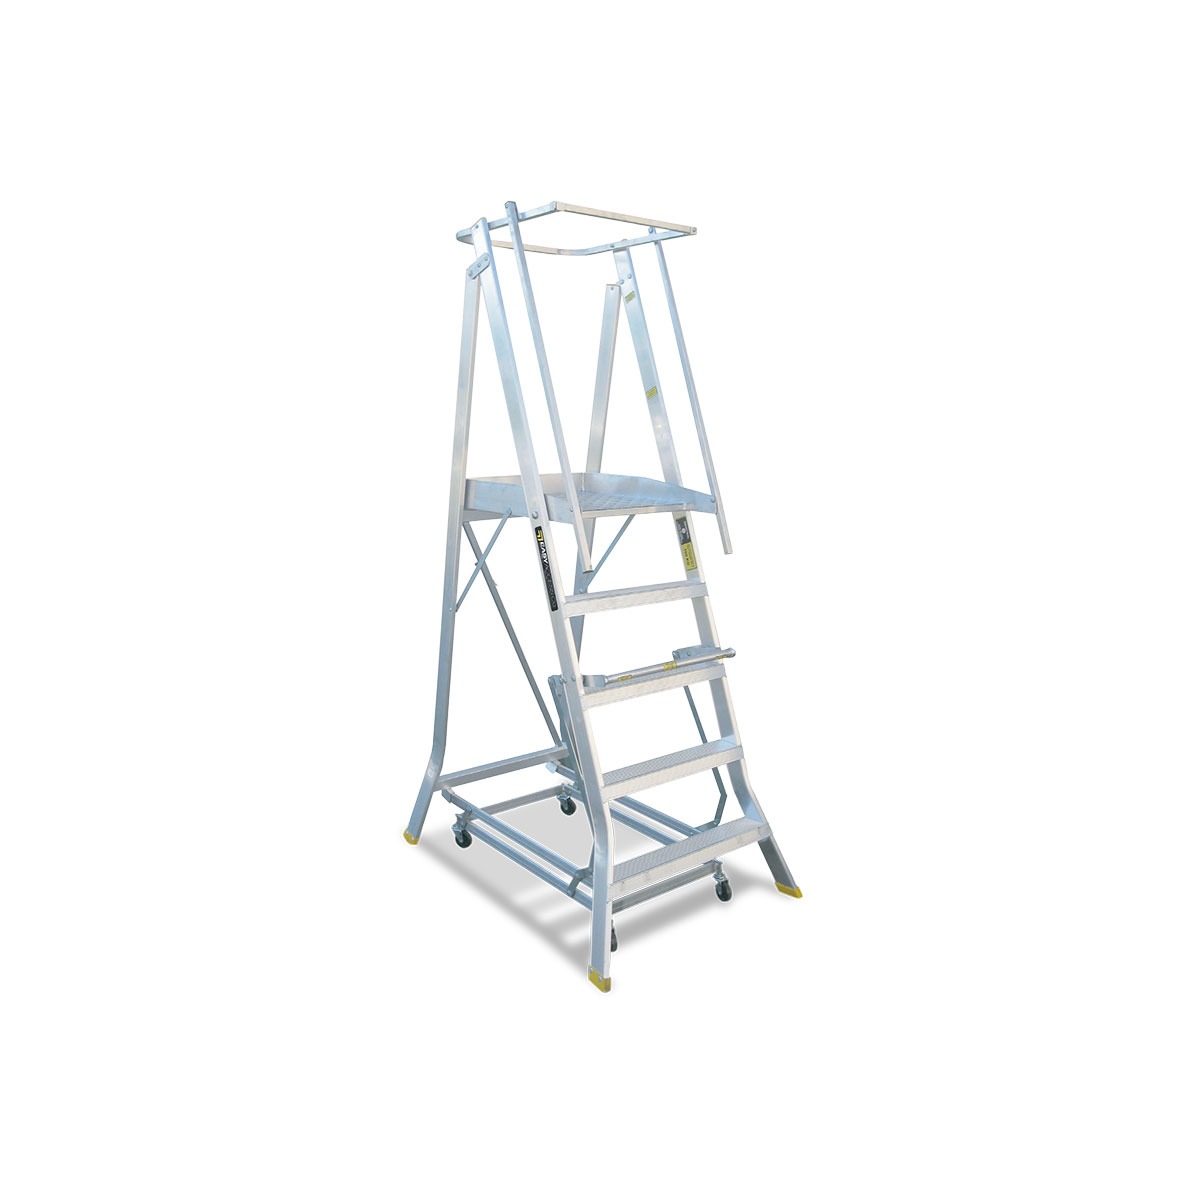 Platform ladder model image